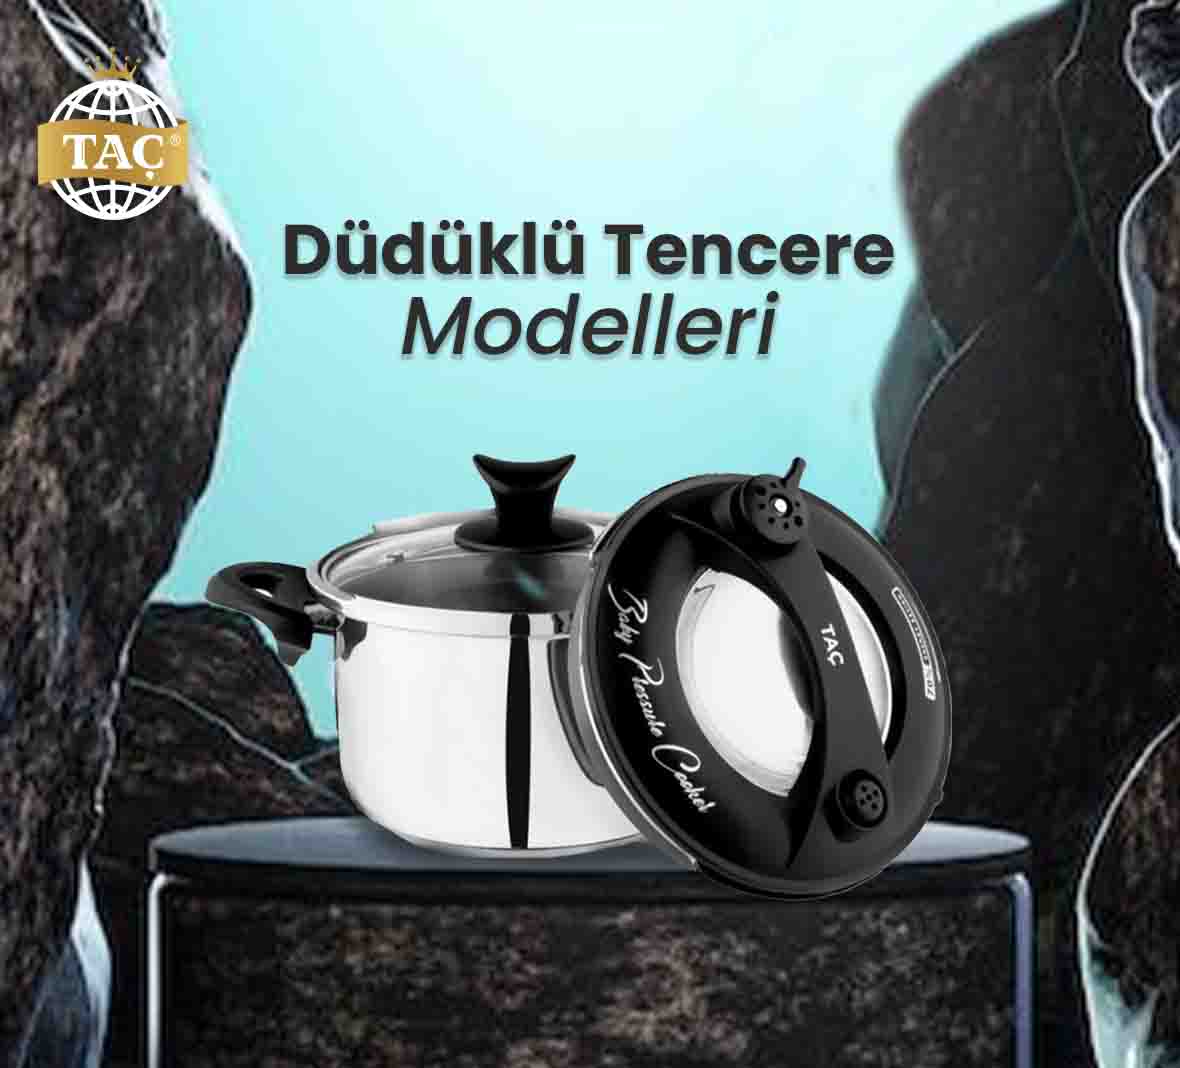 Düdüklü Tencere Modelleri ve Fiyatları - Tacev.com